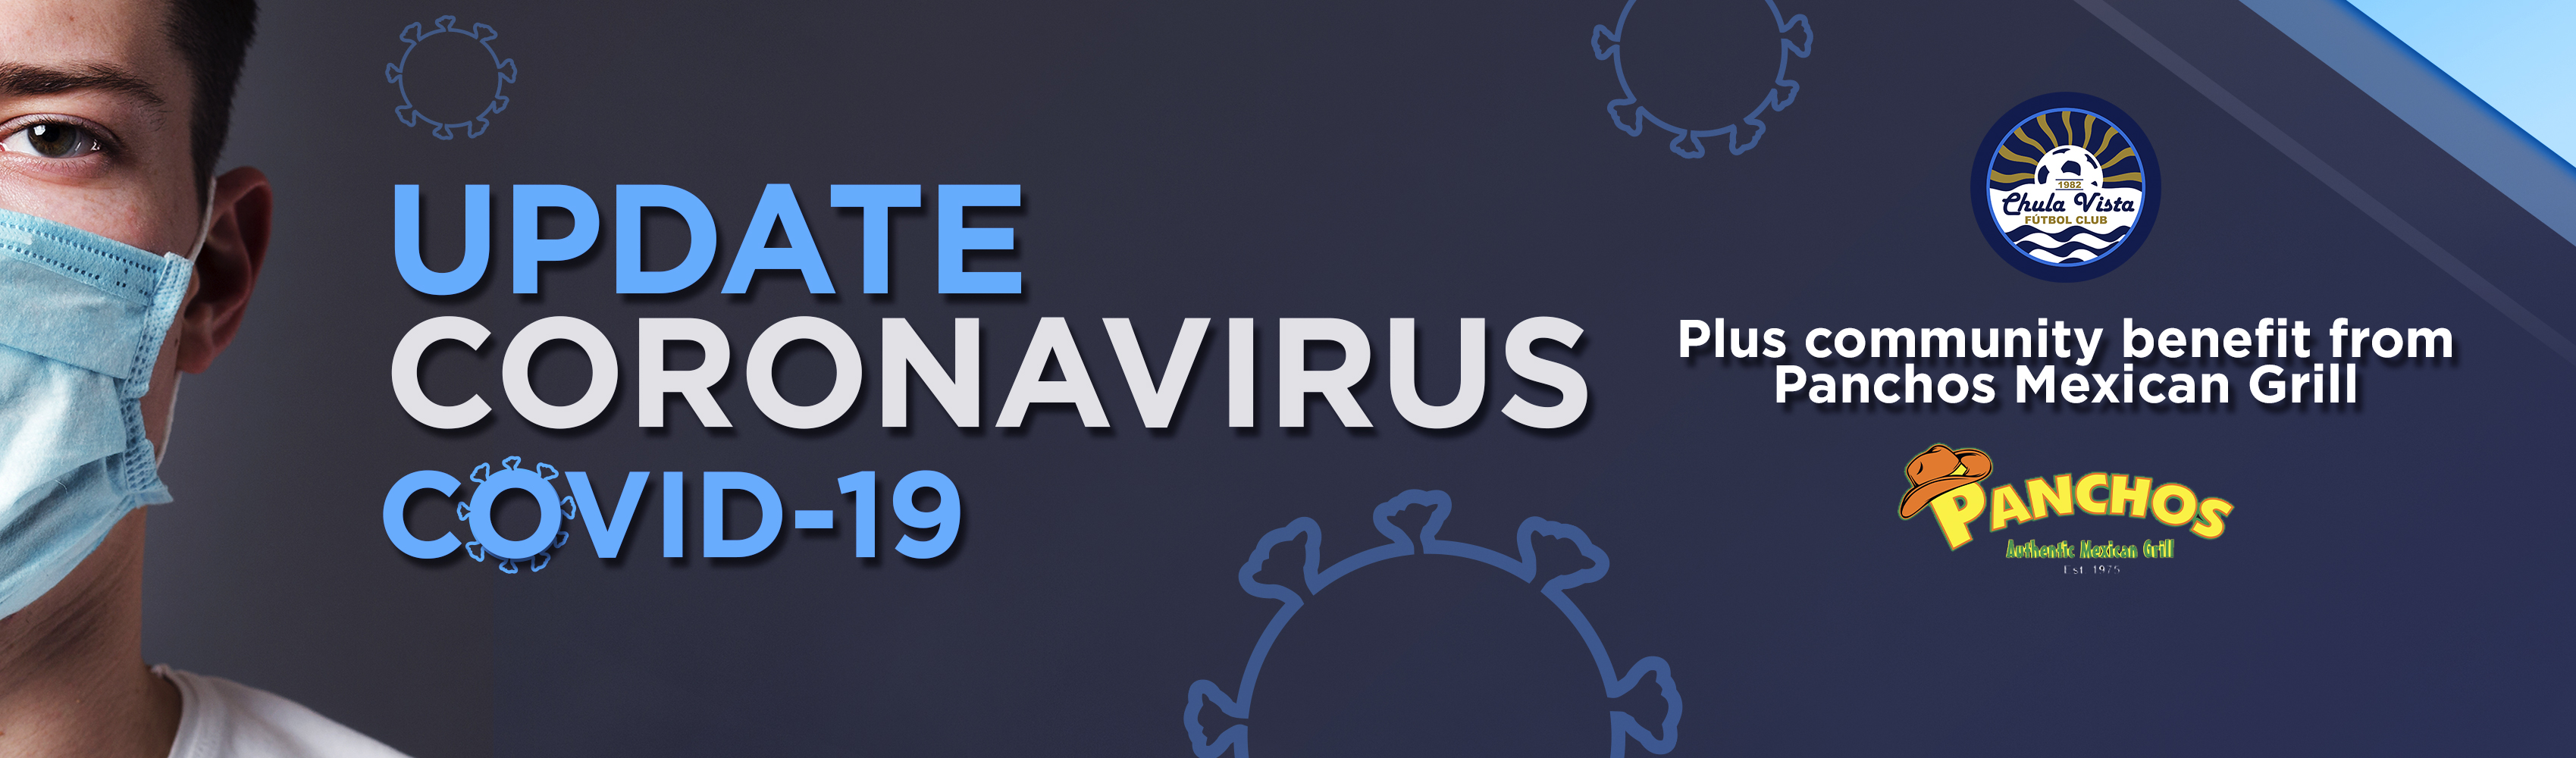 CLUB UPDATE on Coronavirus [COVID-19)